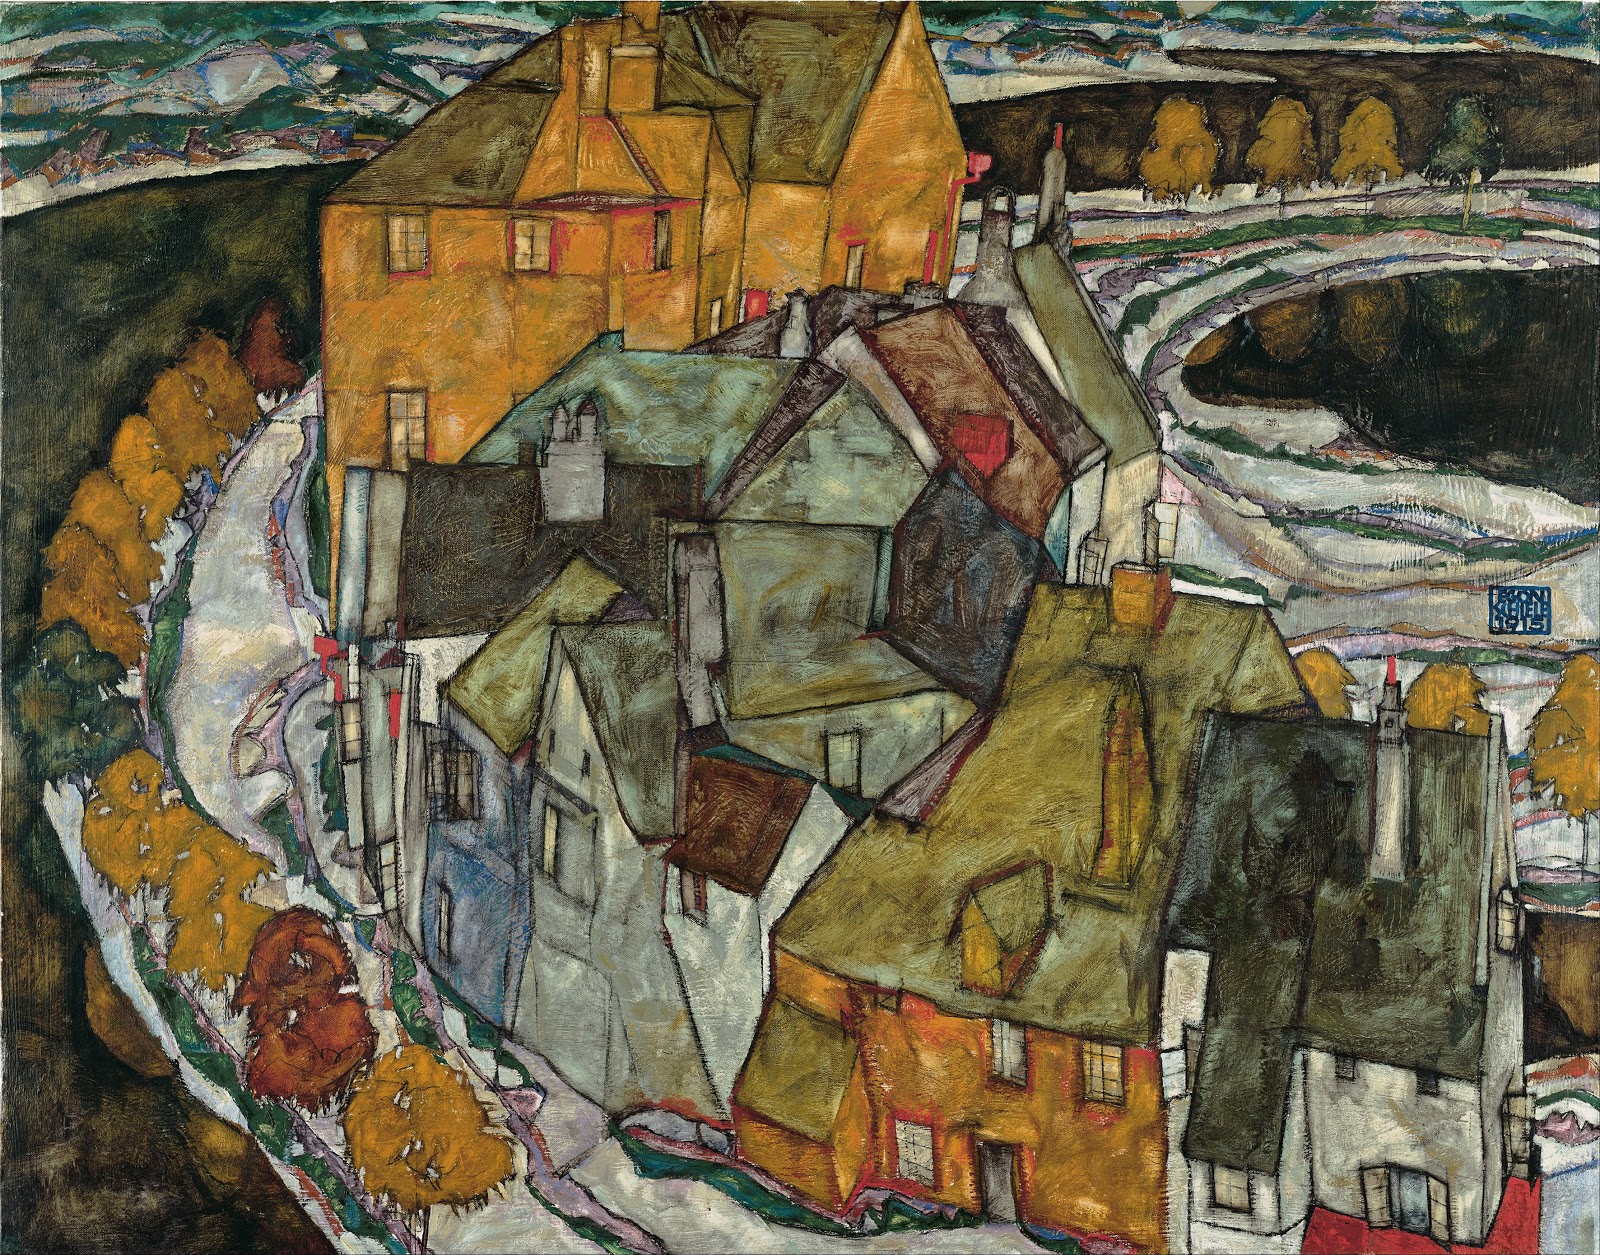 Egon+Schiele-1890-1918 (47).jpg